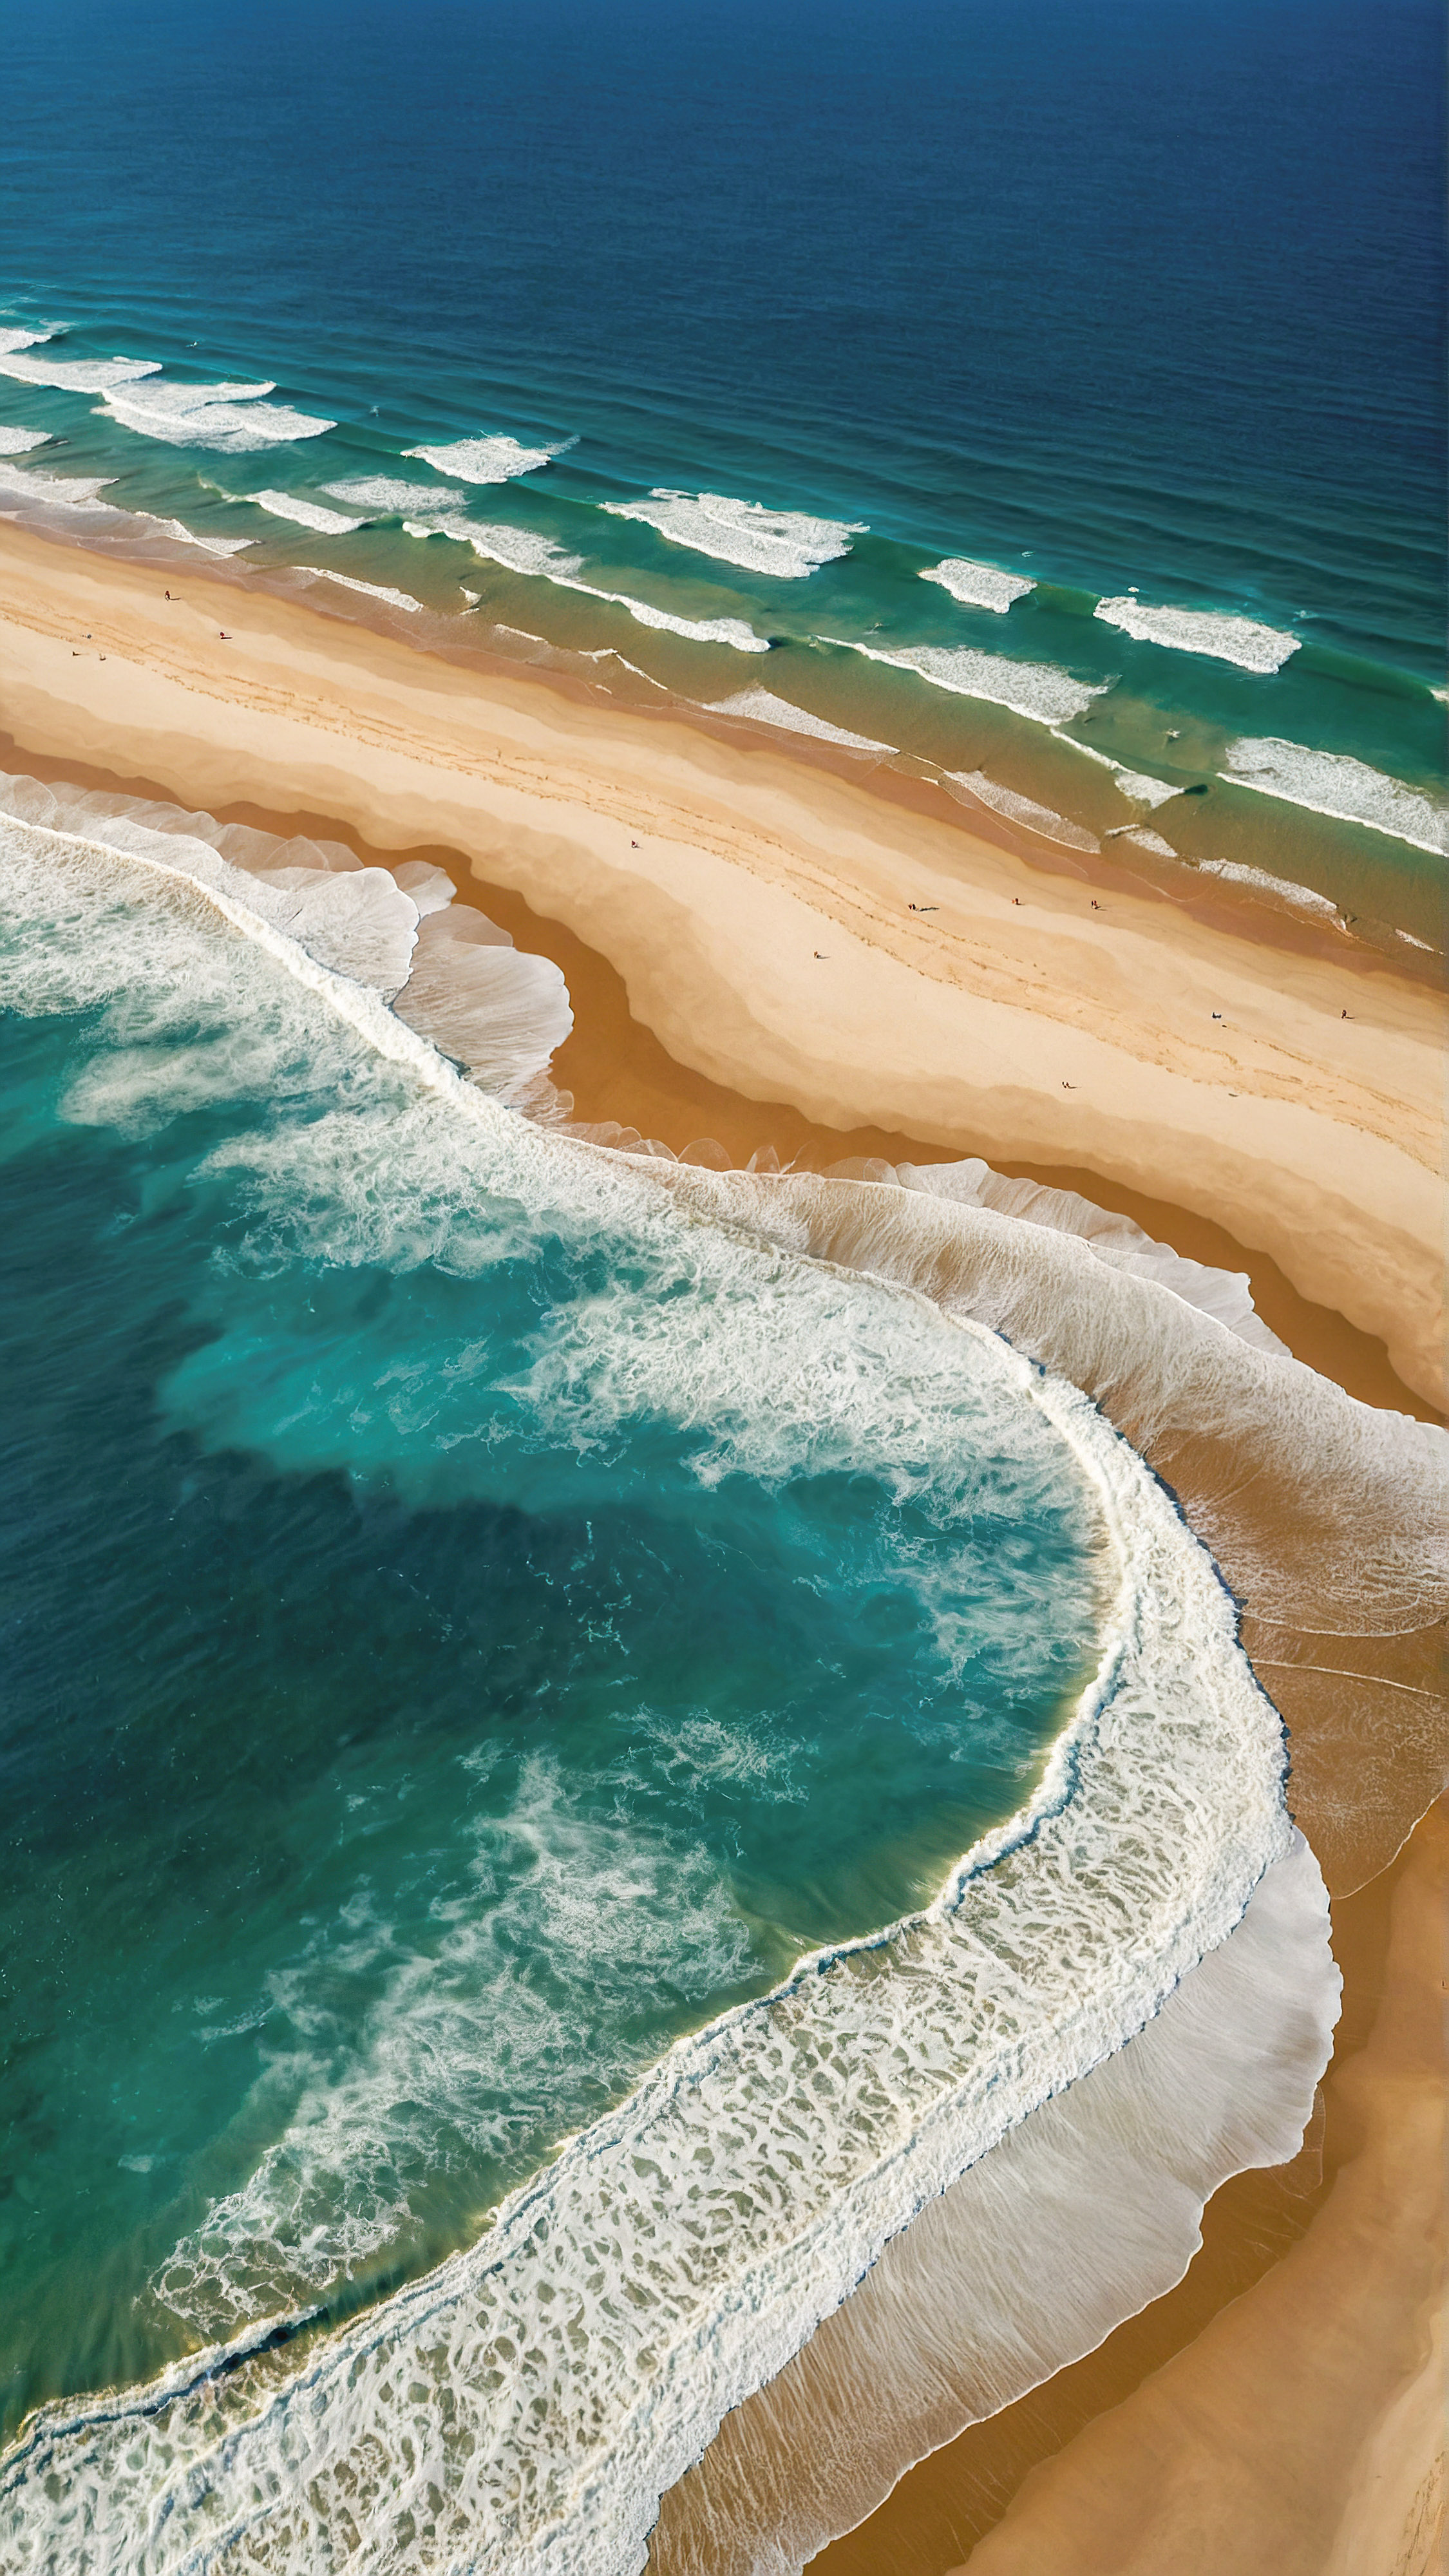 Faites l'expérience de la vue aérienne époustouflante de notre fond d'écran 4K Ultra HD pour iPhone, présentant une plage avec un océan bleu profond, ses nuances plus claires indiquant le mouvement des vagues blanches et mousseuses rencontrant le rivage sablonneux de couleur brun clair.